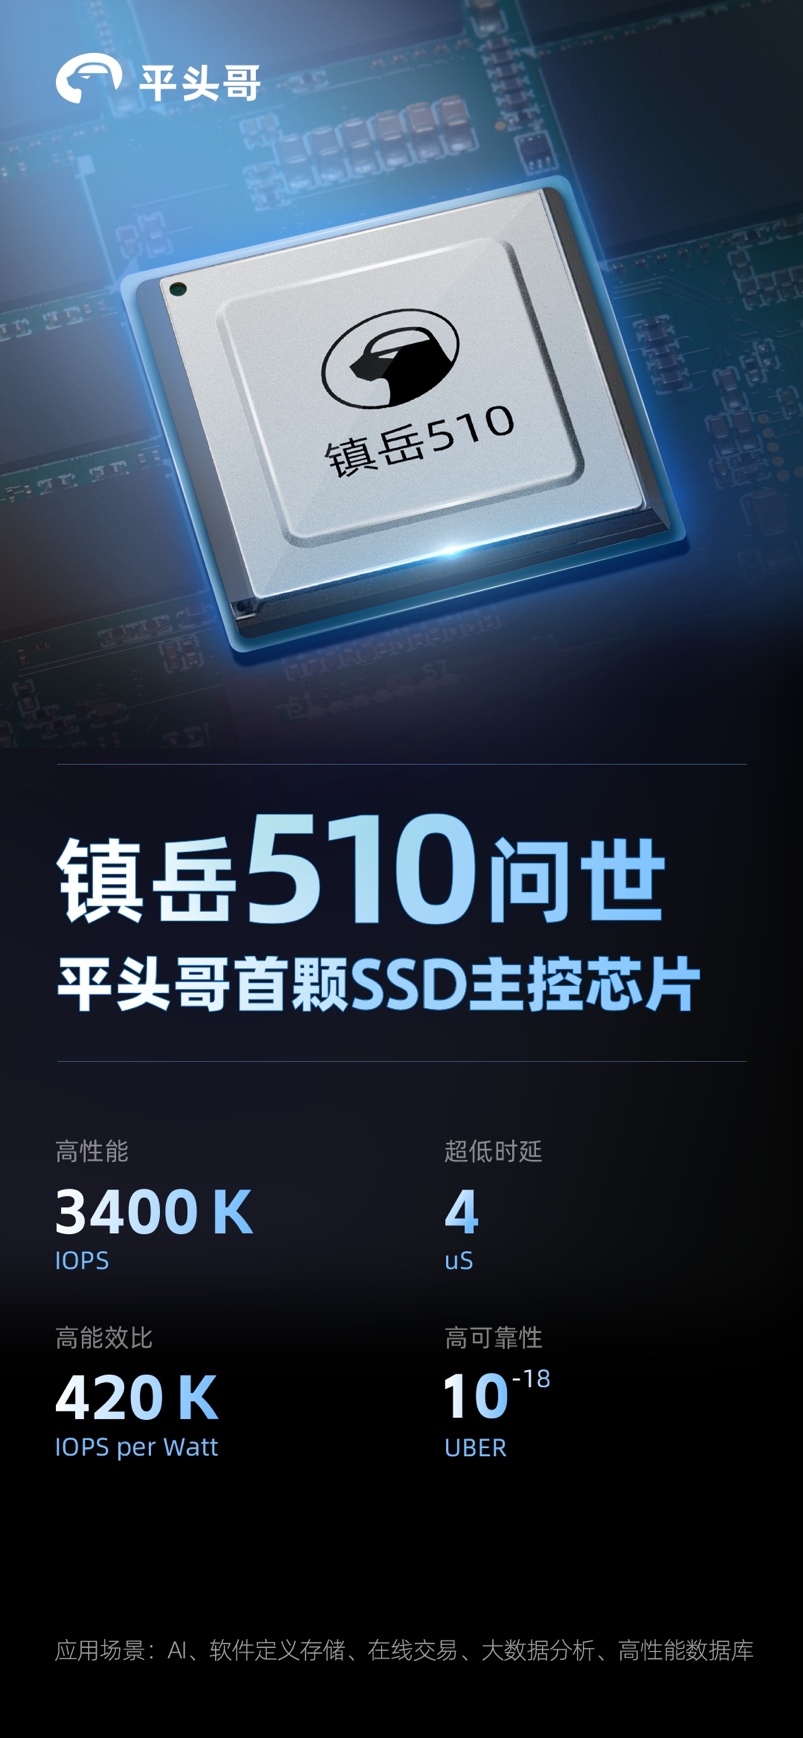 平头哥发布首颗SSD主控芯片镇岳510，误码率领先业界标杆一个数量级